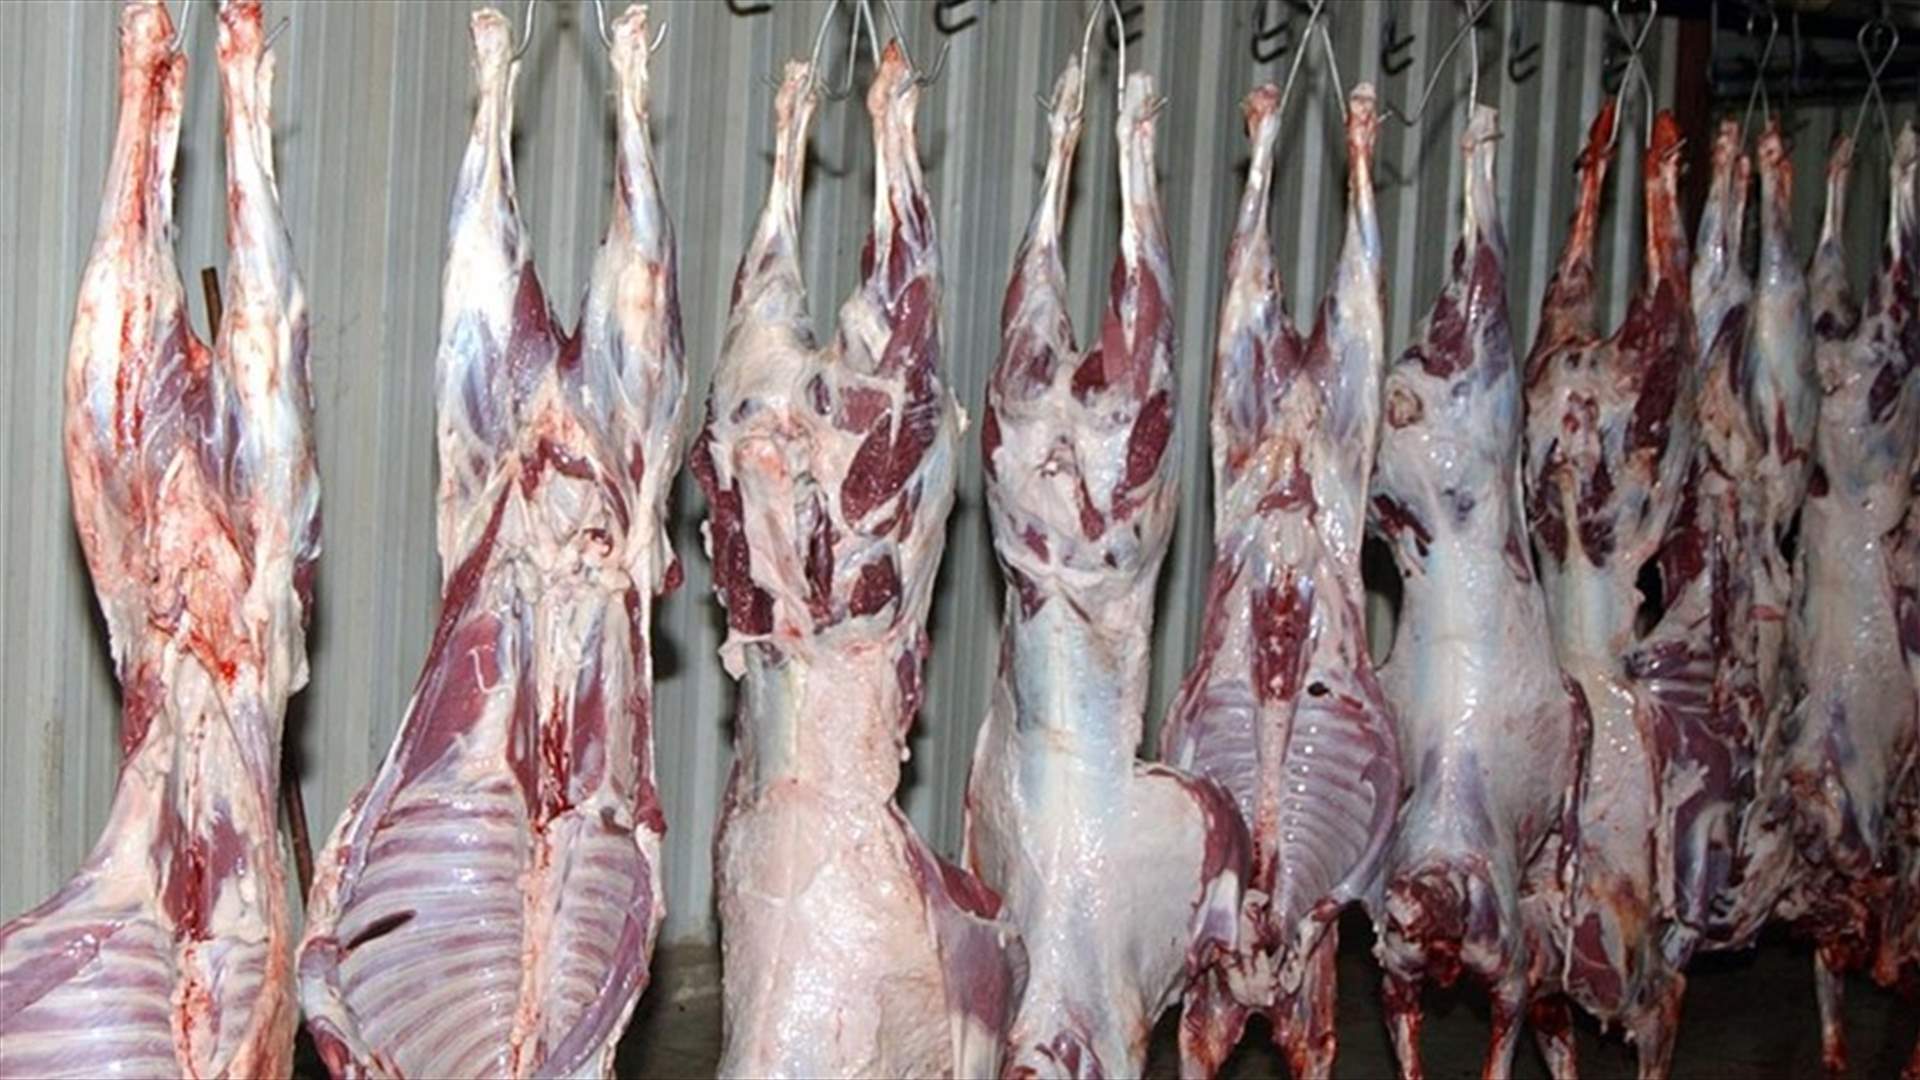 نقابة تجار اللحوم: لإعادة التسهيلات المصرفية لزوم تجارتنا